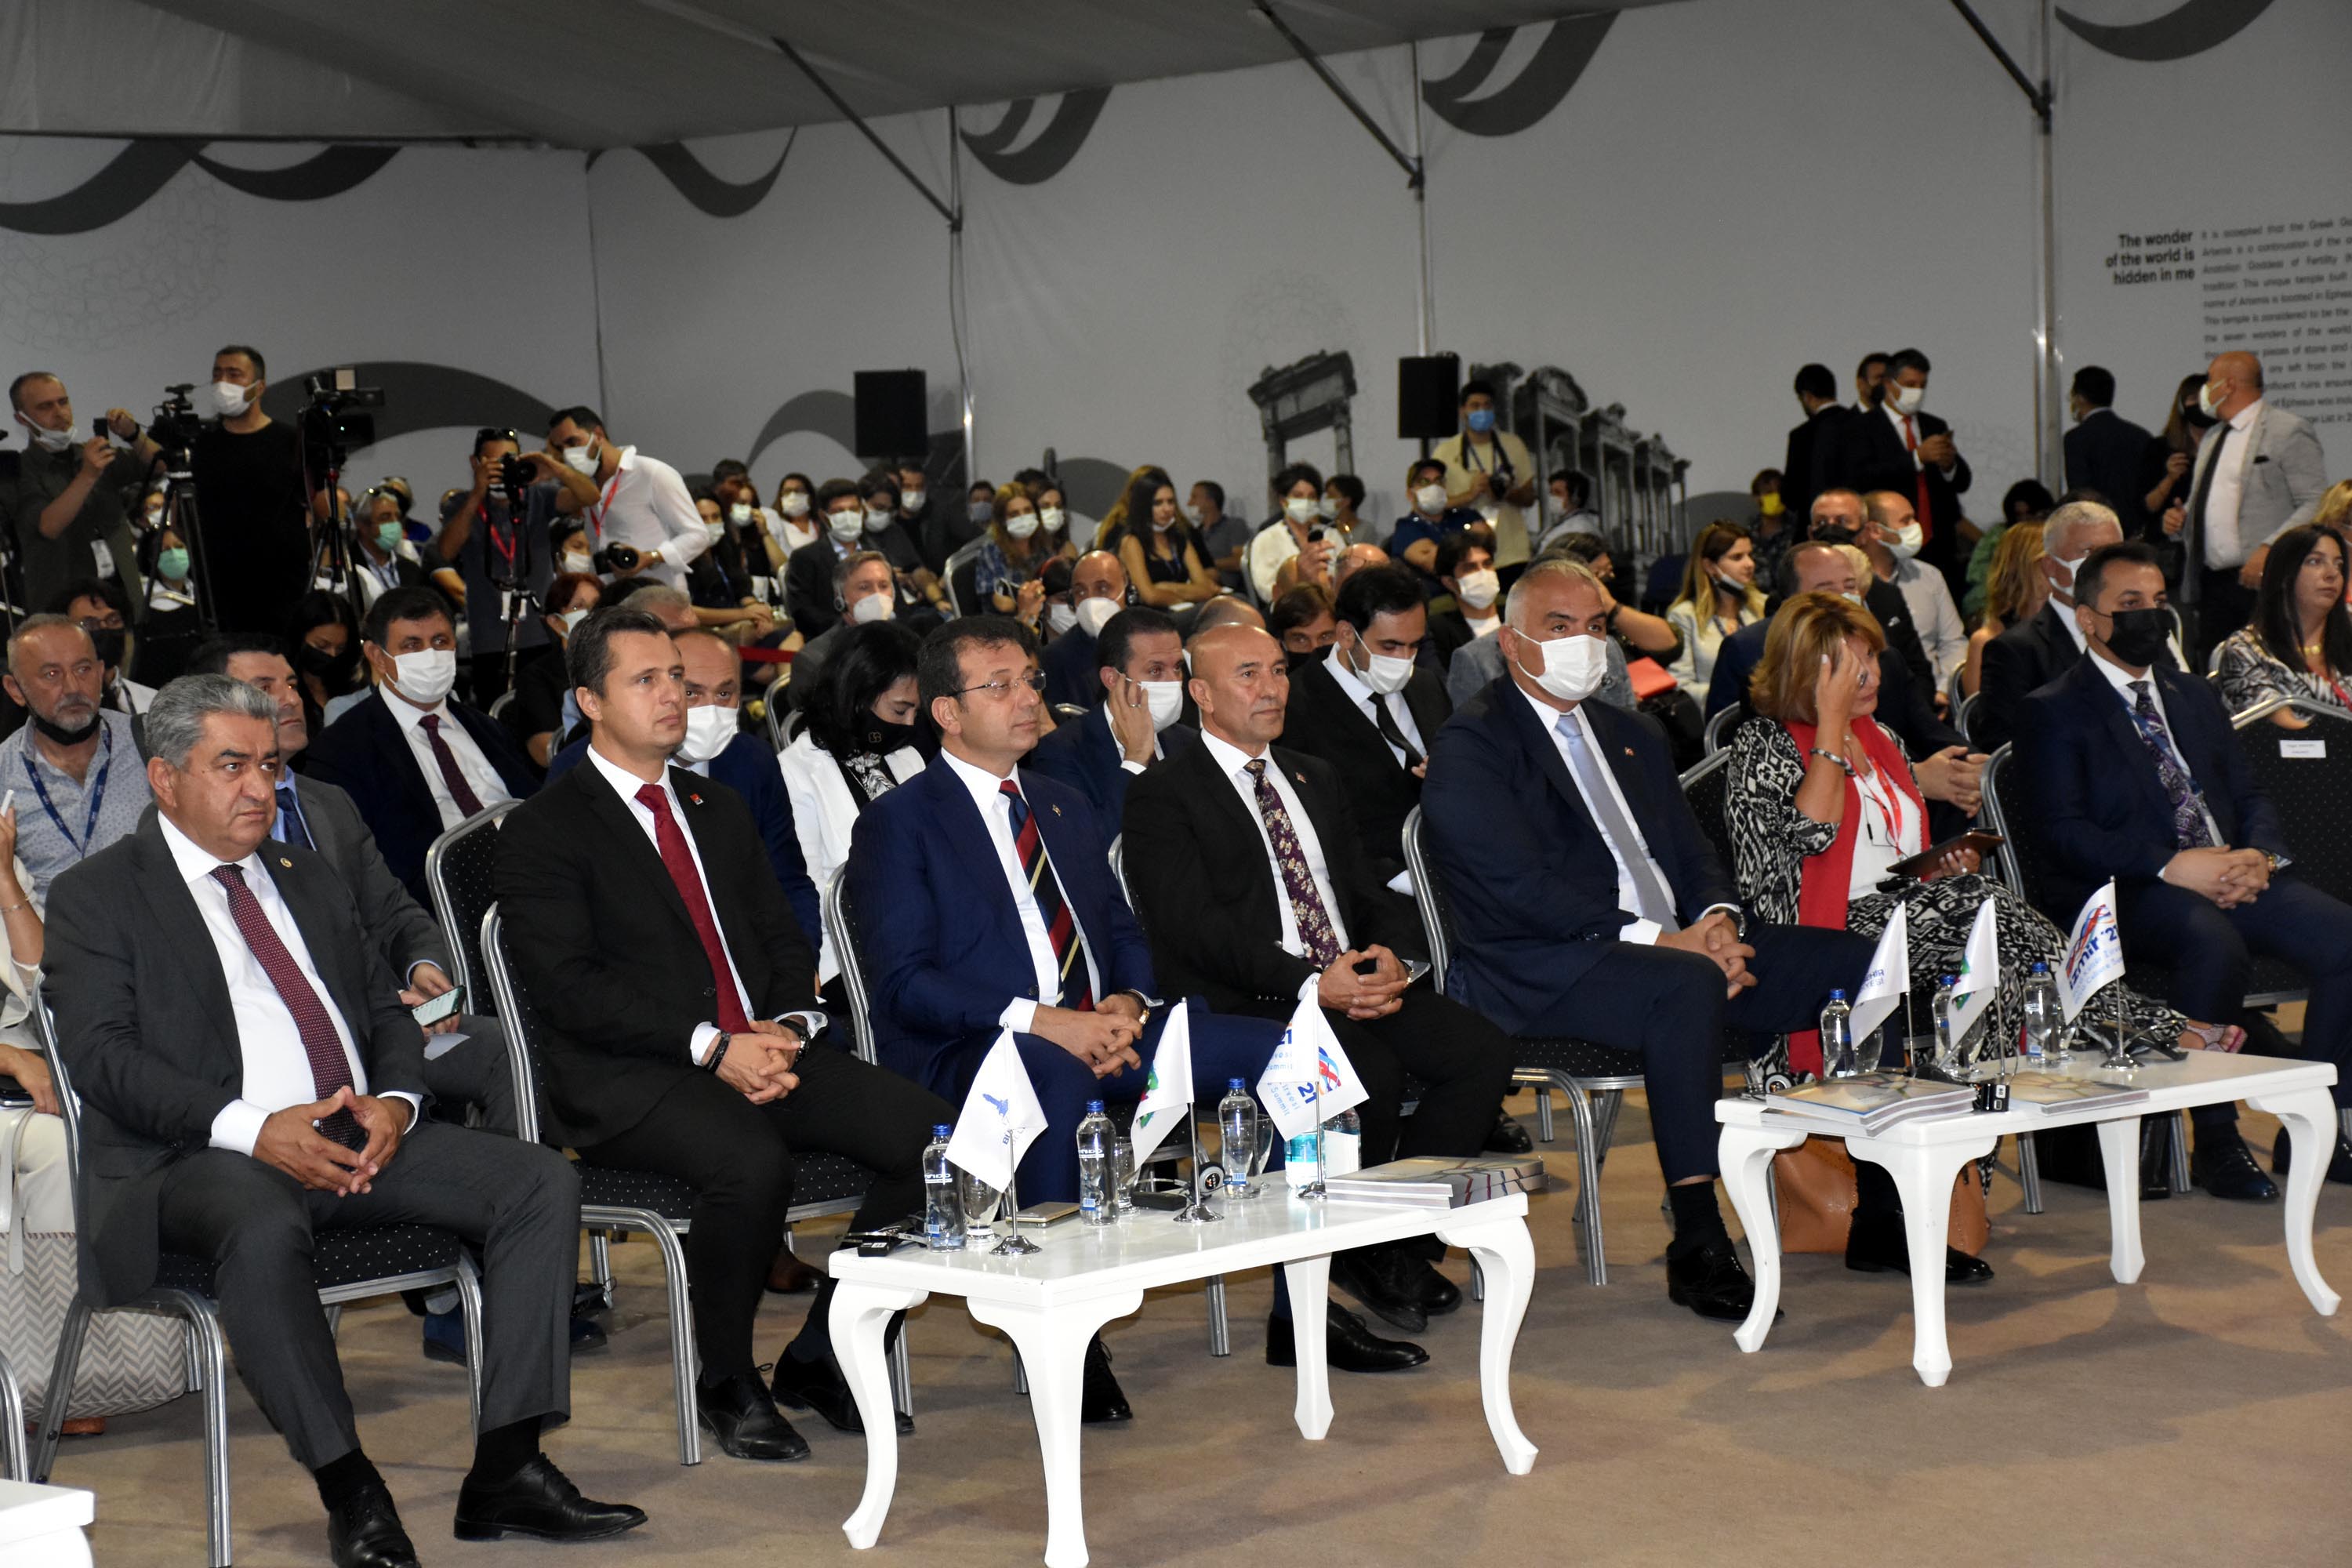 Kültür Bakanı Ersoy: İklim değişikliği üzere başlıkların tartısı altında eziliyoruz; gidişat pek güzel değil